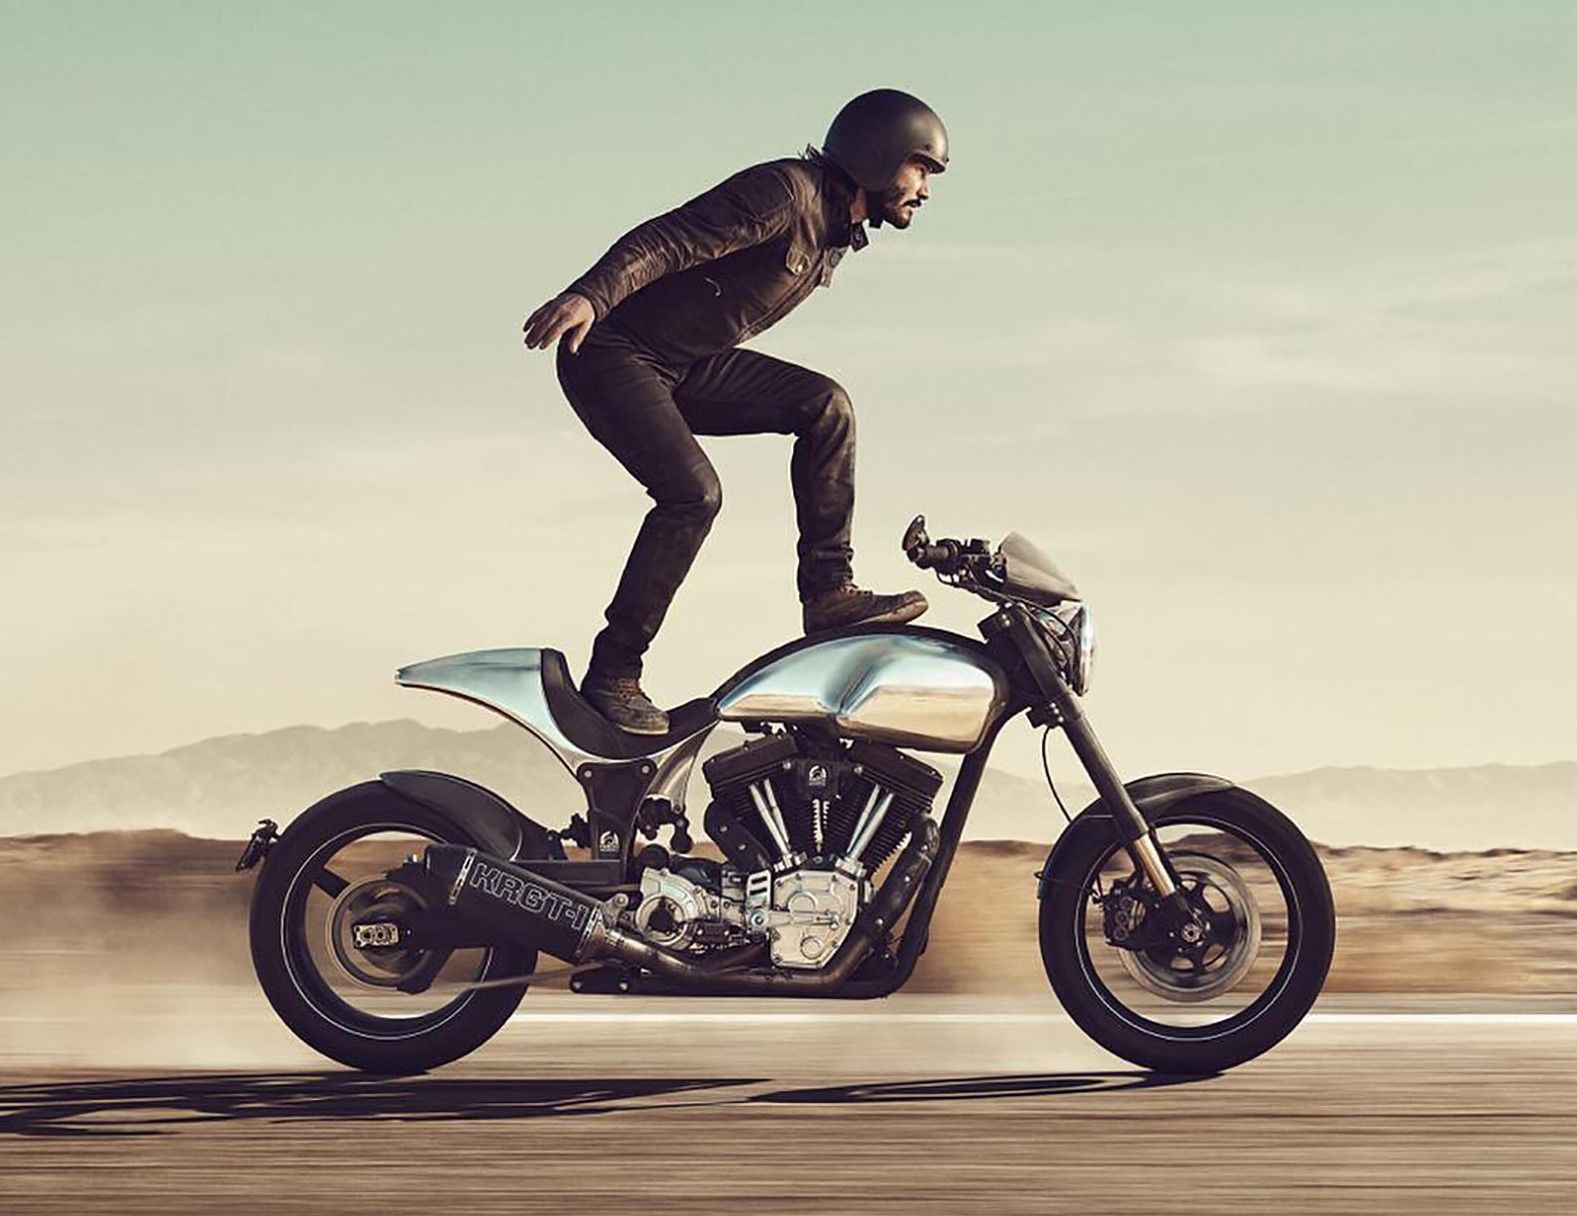 Keanu Reeves performing motorcycle stunt